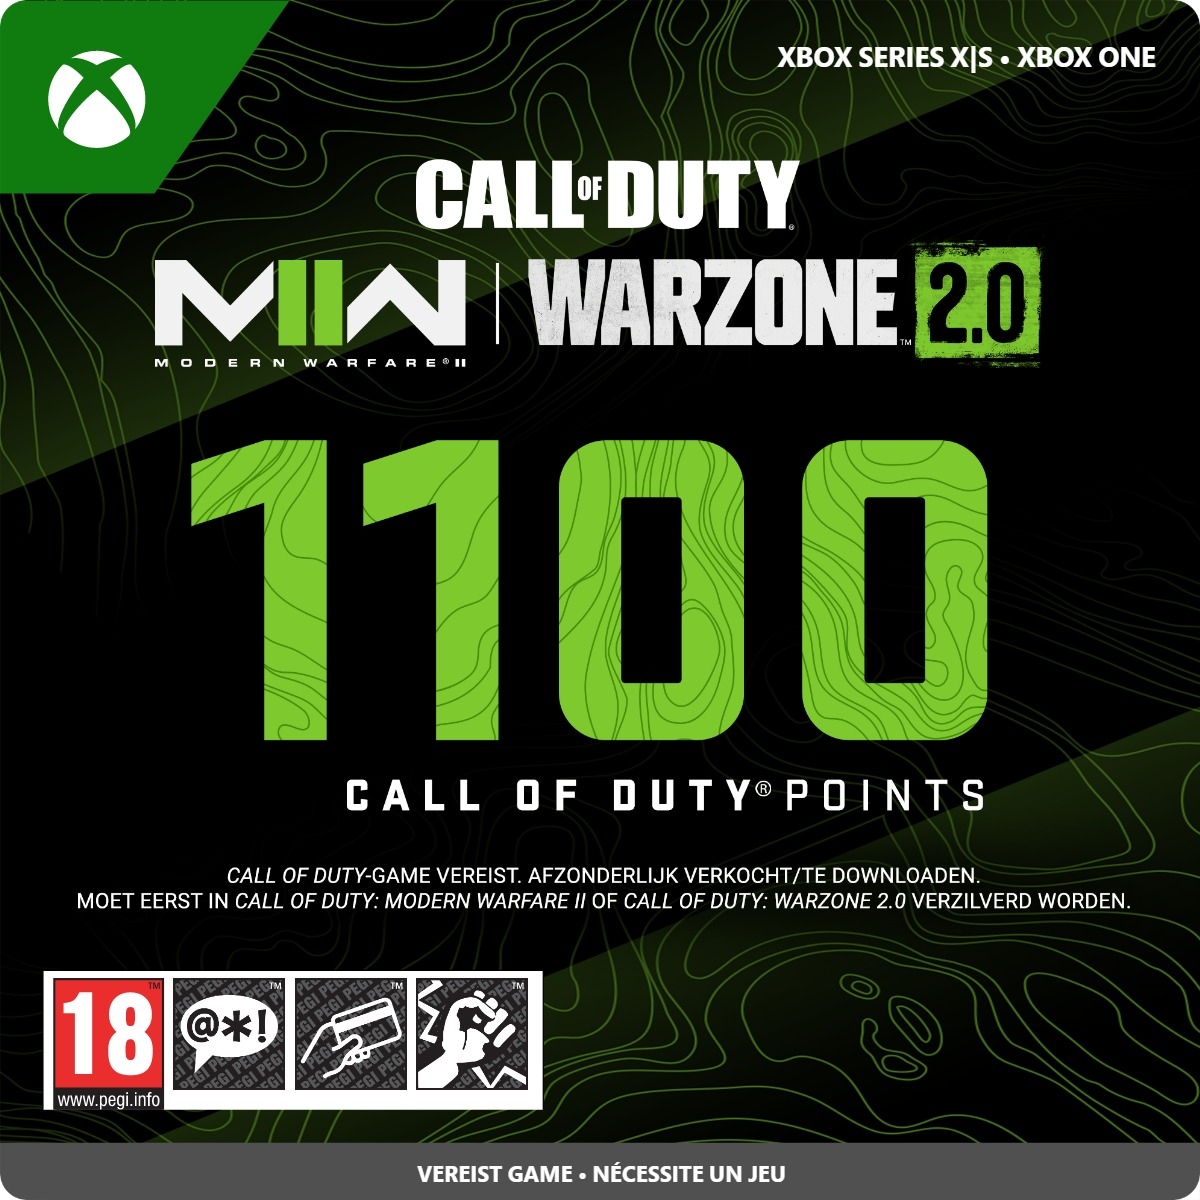 1100 Xbox Call of Duty Points (Direct Digitaal Geleverd) XboxLiveKaarten.nl